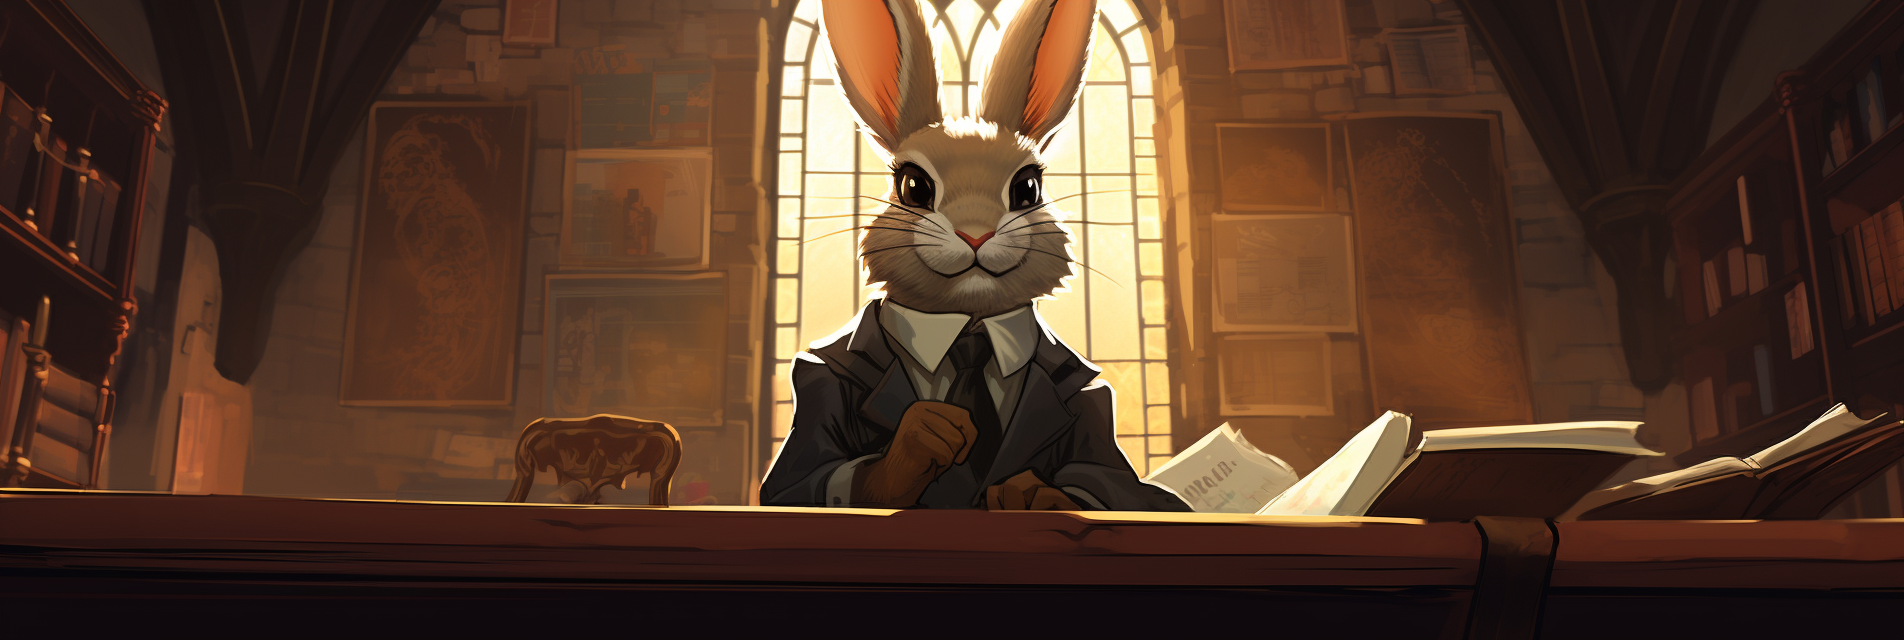 Ein Hase als Richter sitzt in einem mittelalterlich wirkenden Kanzleizimmer